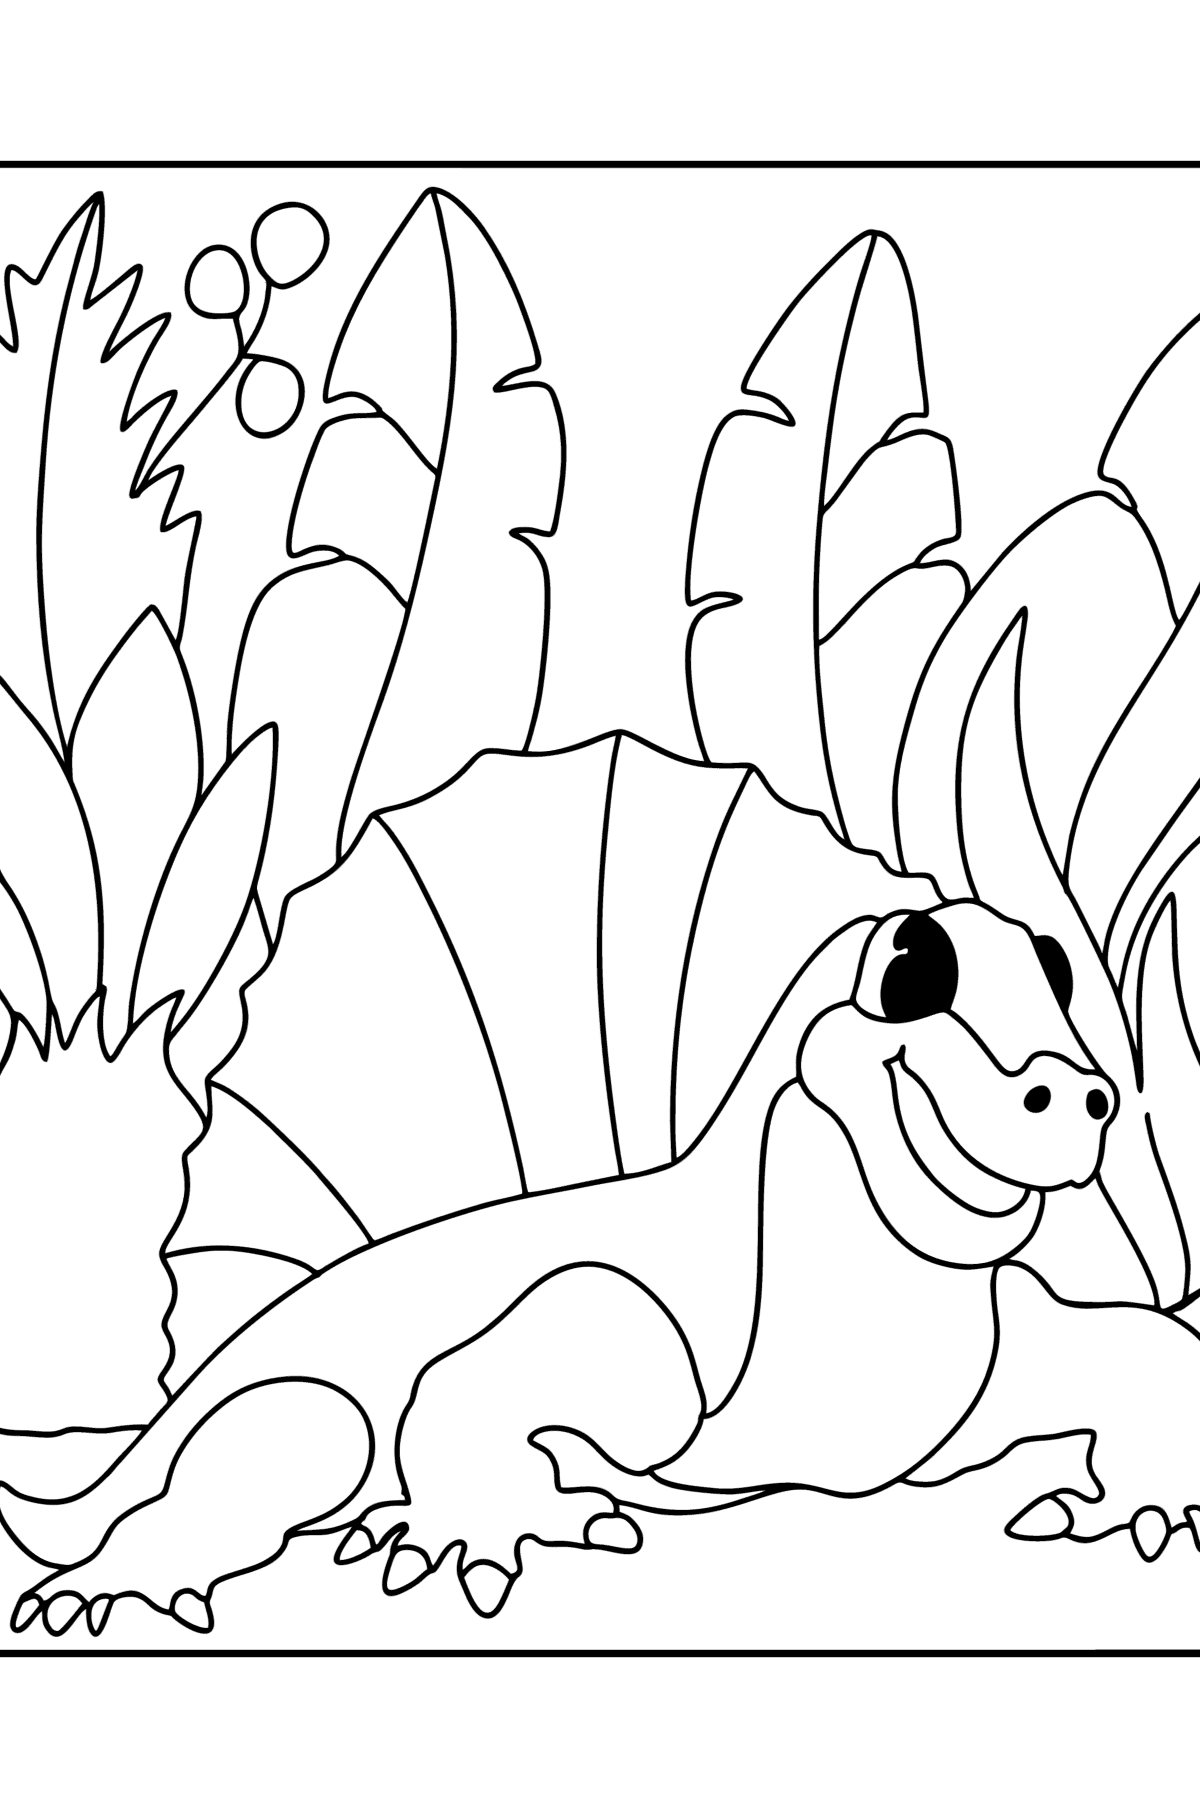 Desen de colorat dimetrodon - Desene de colorat pentru copii